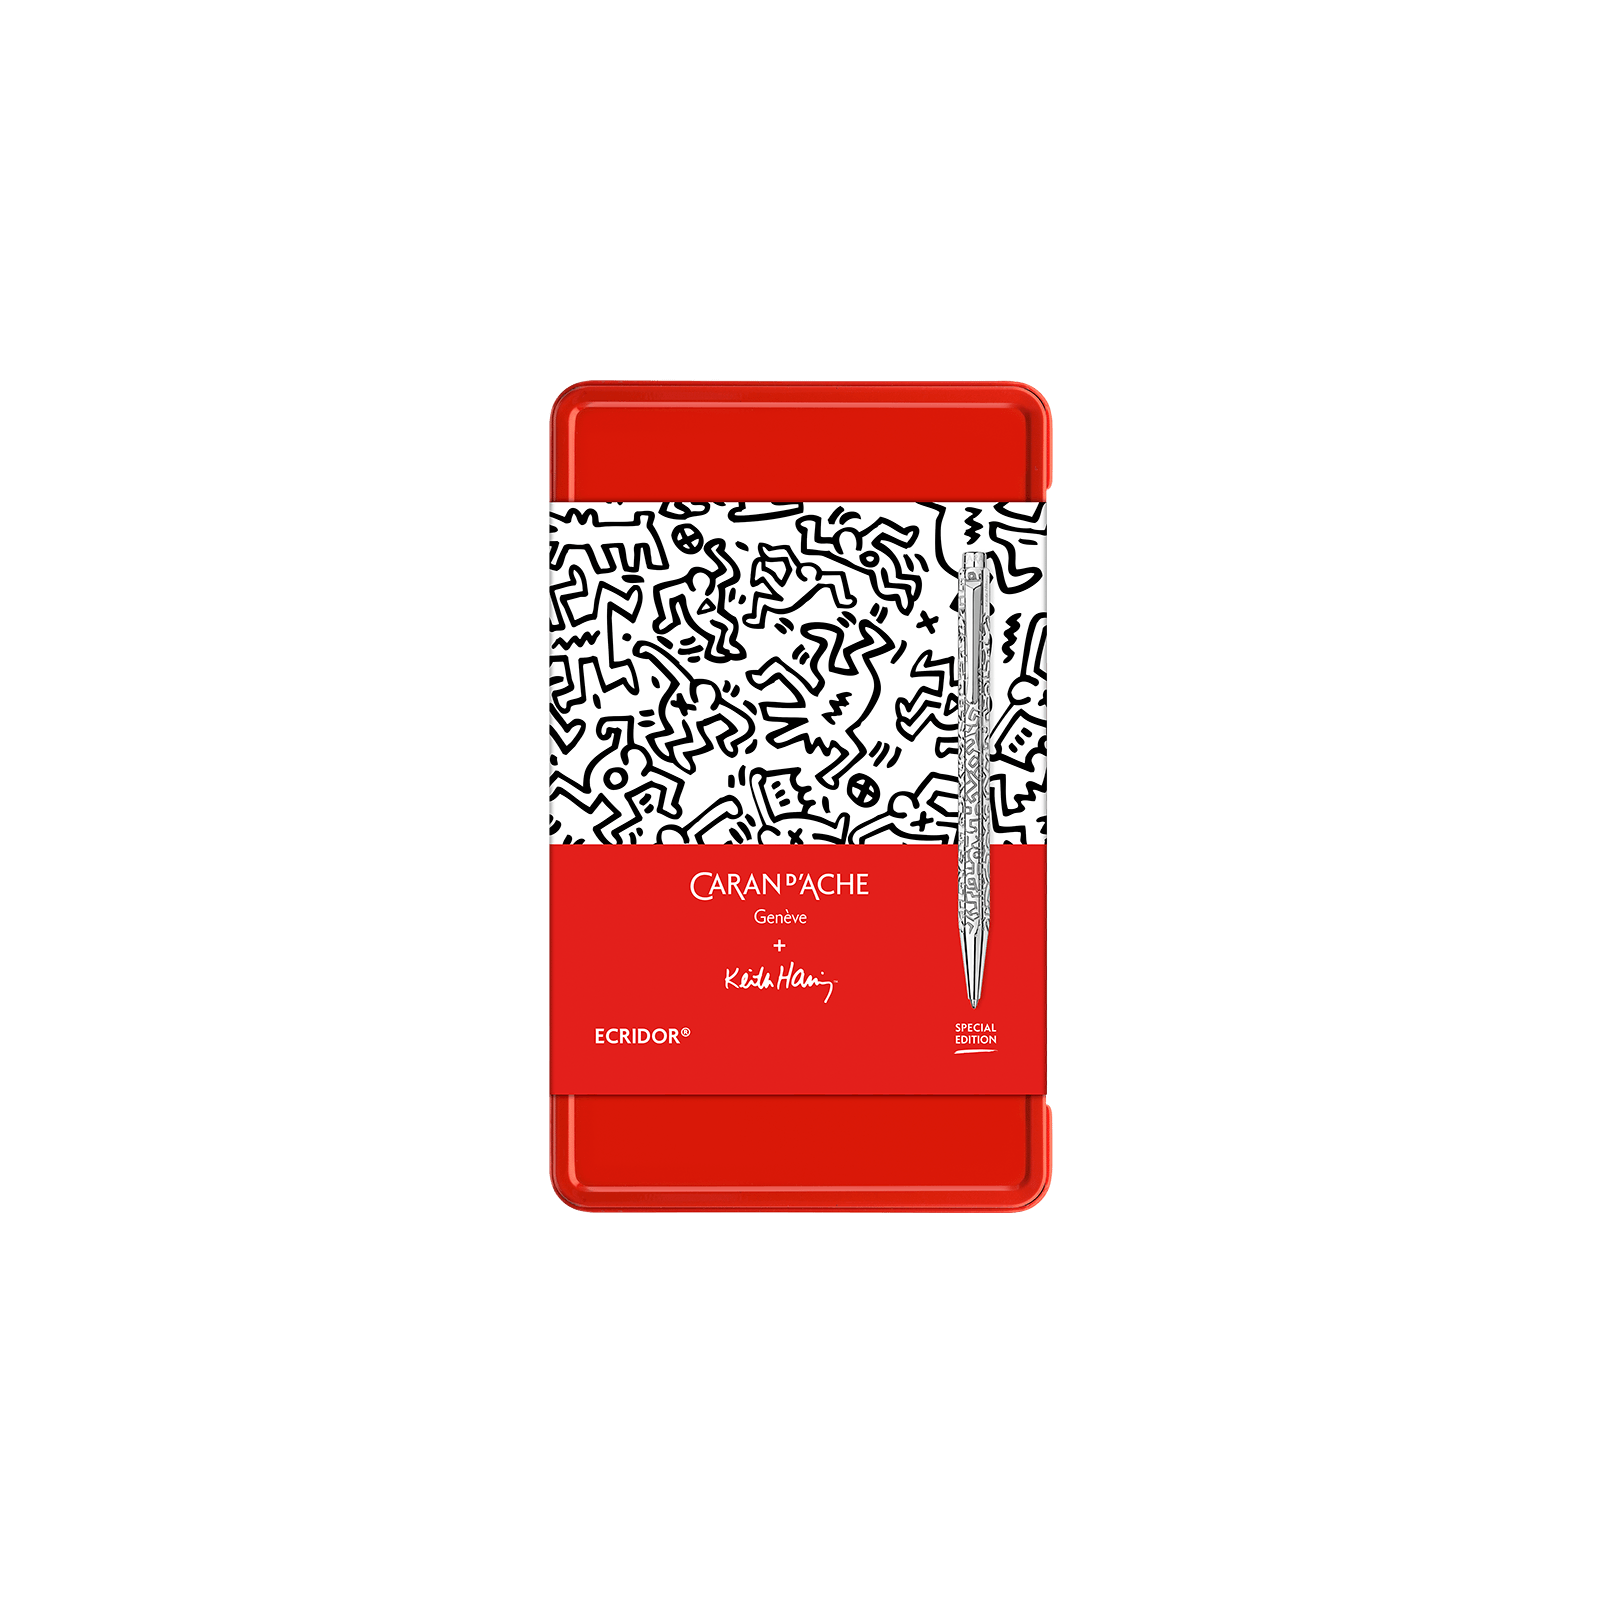 Caran d'Ache Set Ecridor Keith Haring Special Edition Ballpoint - Pencraft the boutique